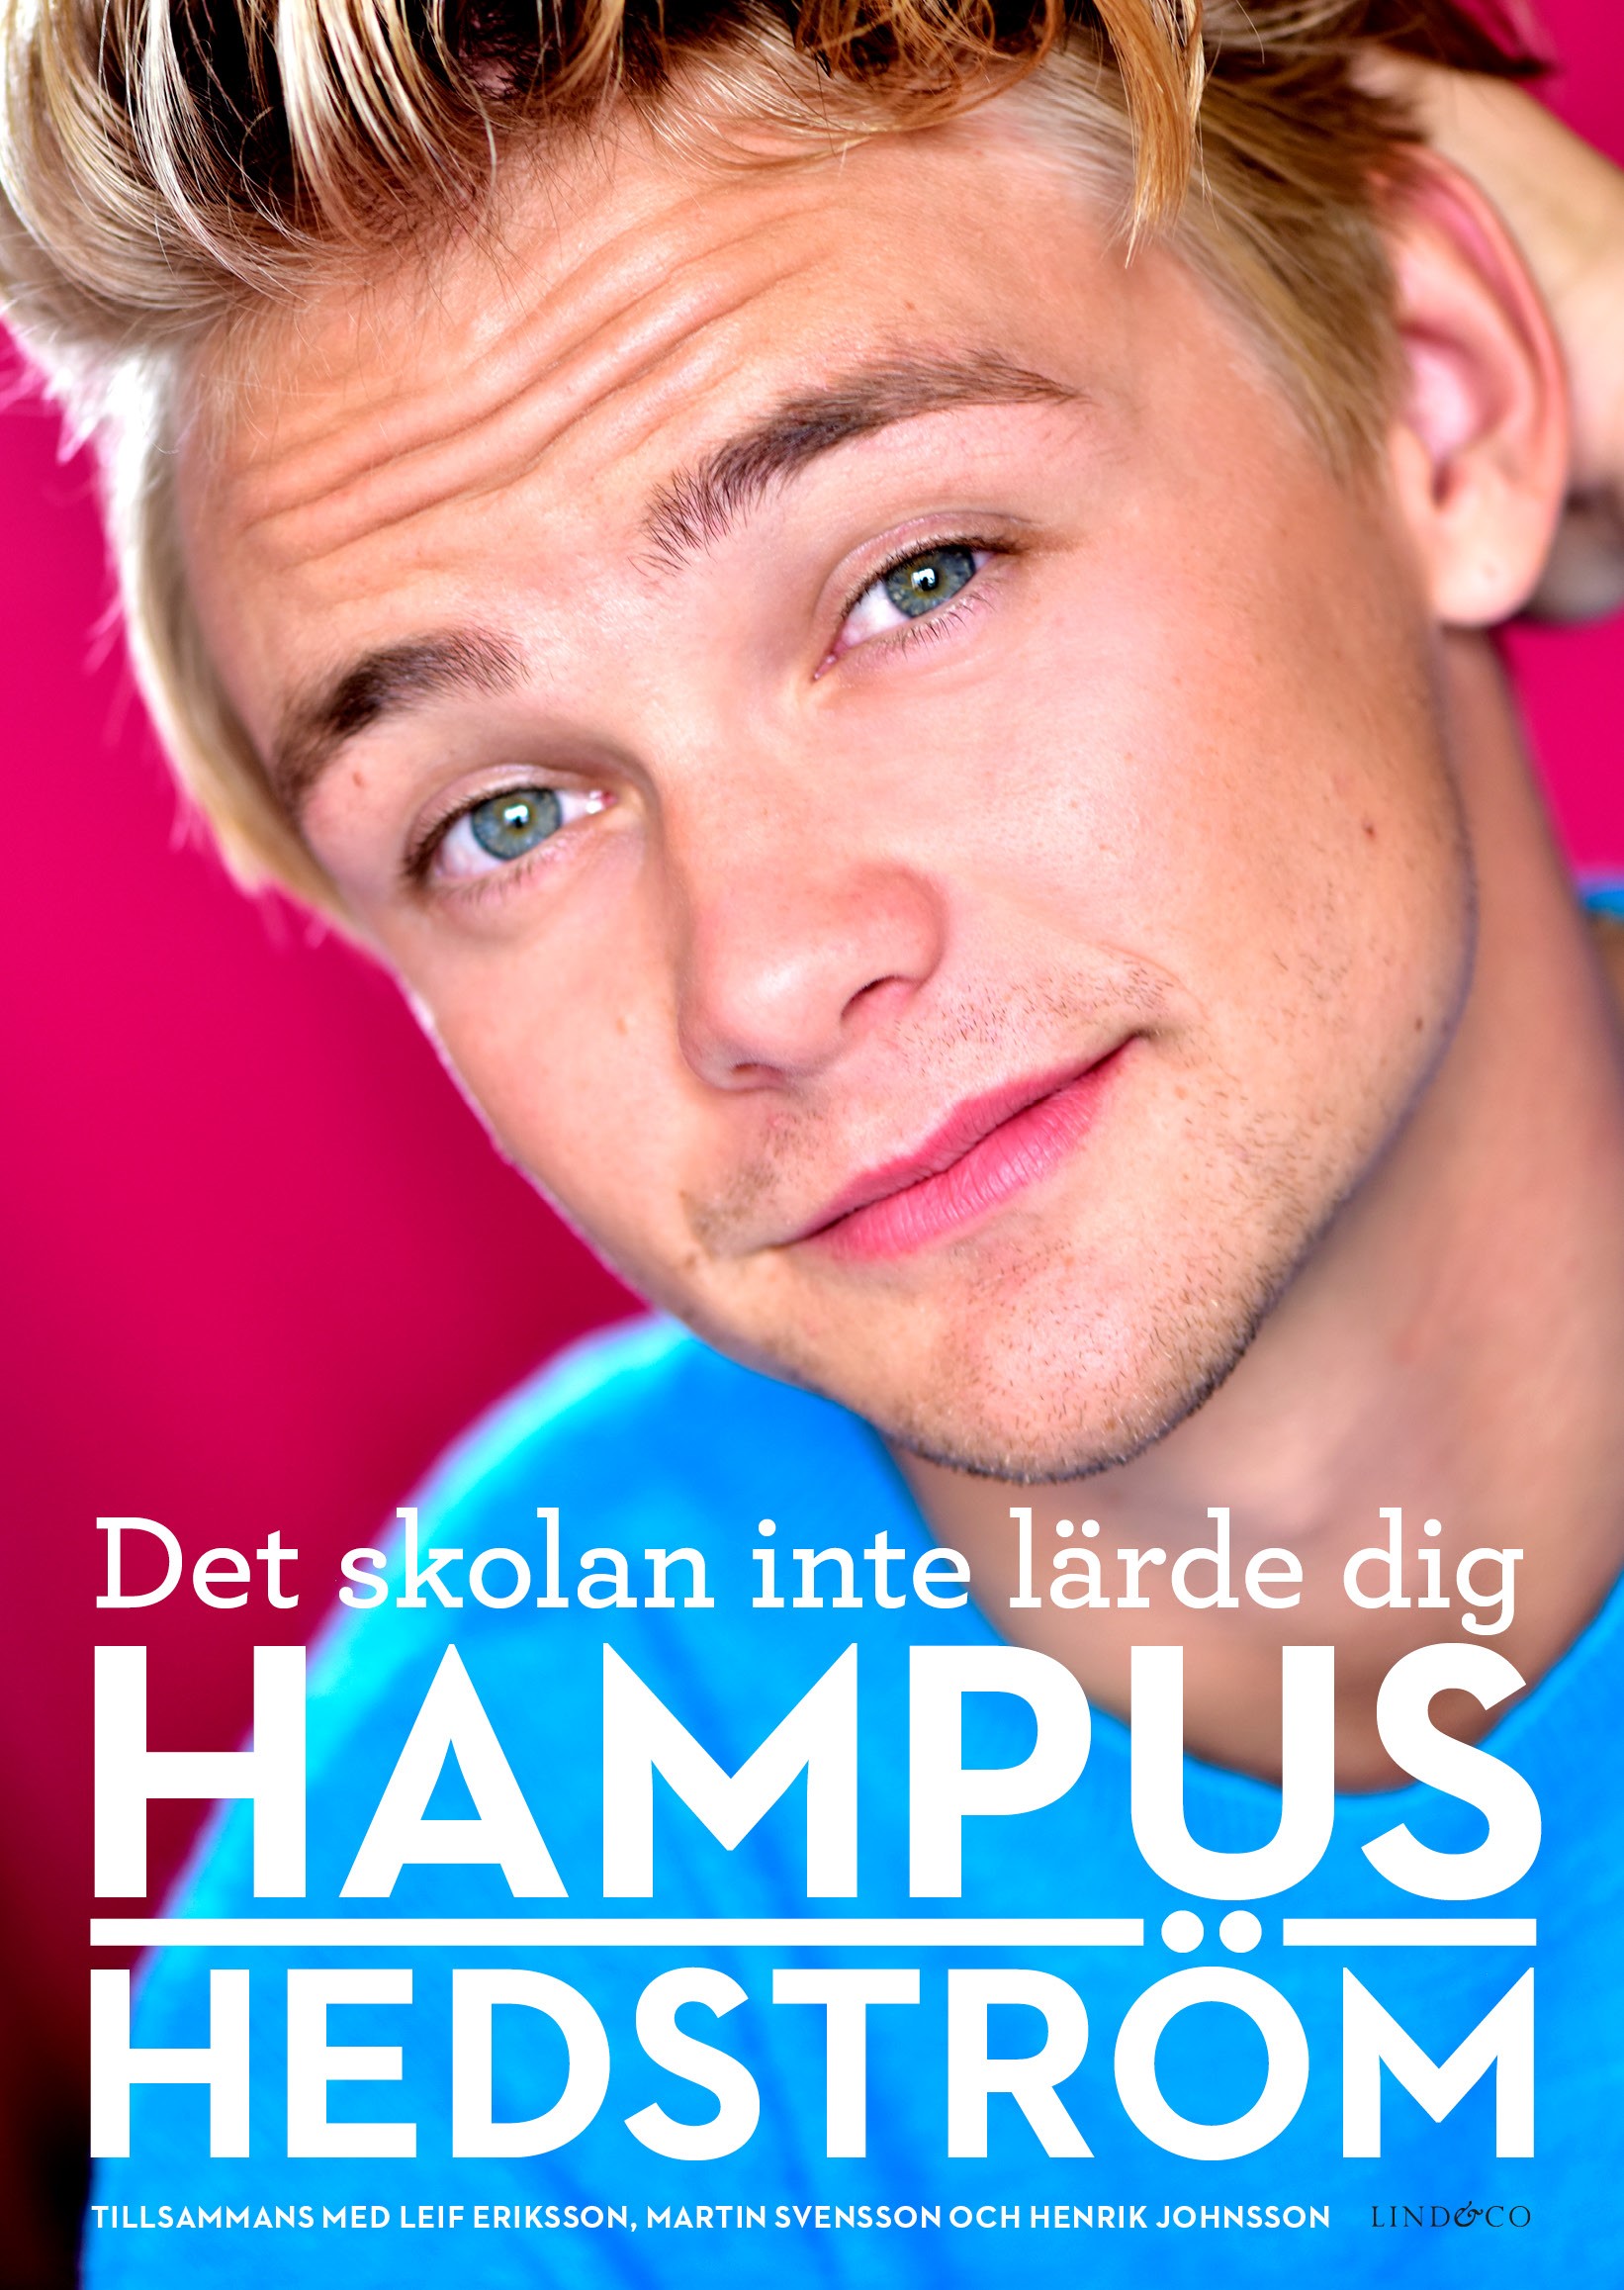 Omslaget till boken "Det skolan inte lärde dig", stort foto på Hampus Hedström. Foto: Förlaget Lind & Co